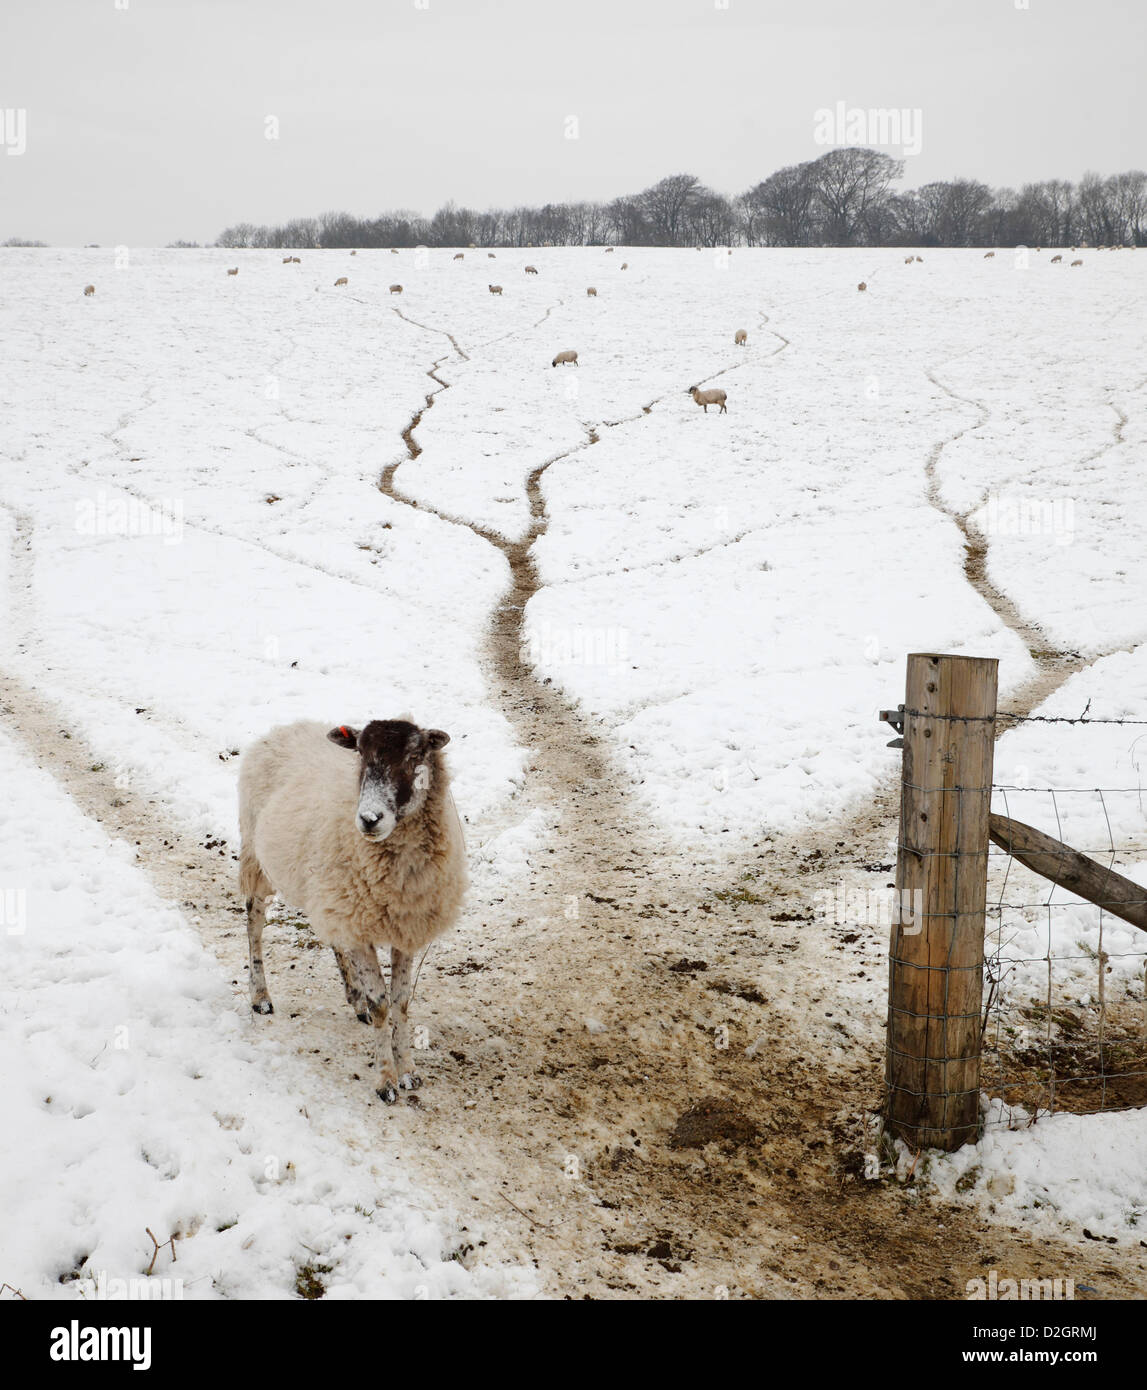 23 janvier 2013. Domaine de moutons aux prises avec la neige en hiver. Des North Downs, Biggin Hill, Kent, Angleterre, Royaume-Uni. Banque D'Images